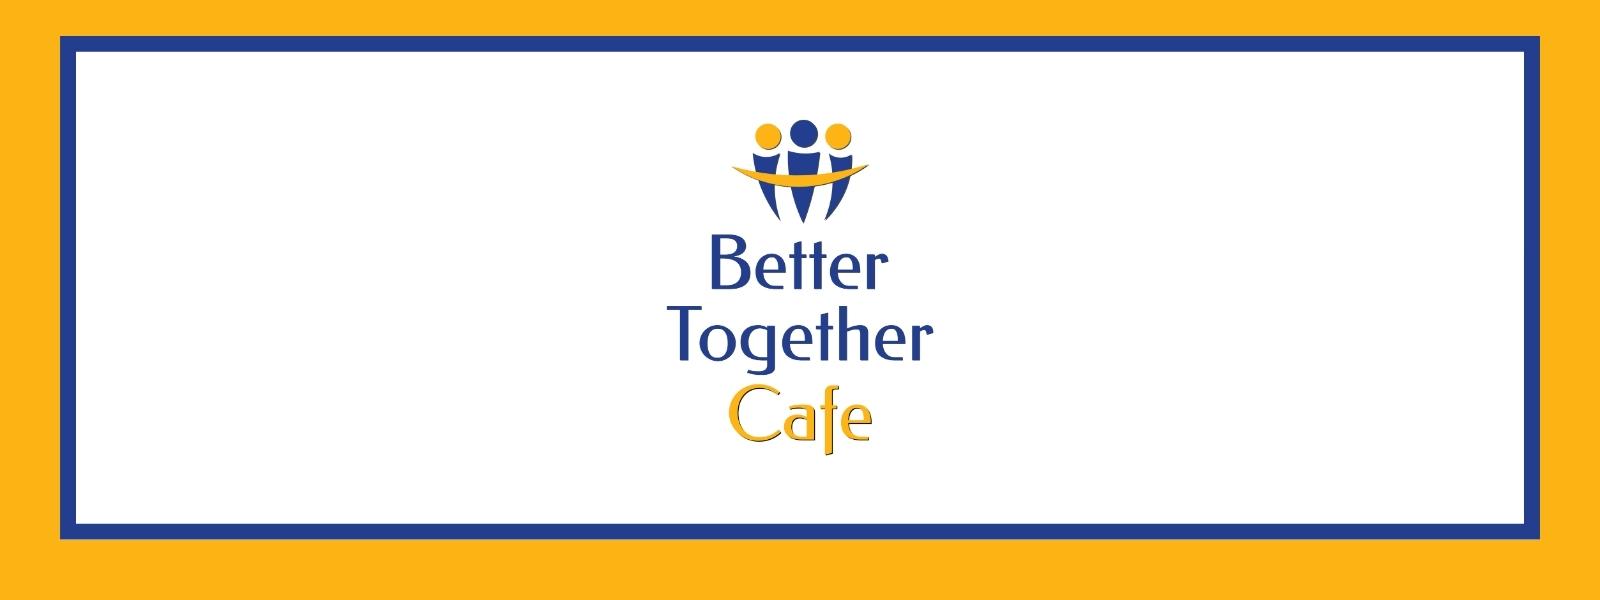 Senior Services Debuting Better Together Café at Windsor Town Center